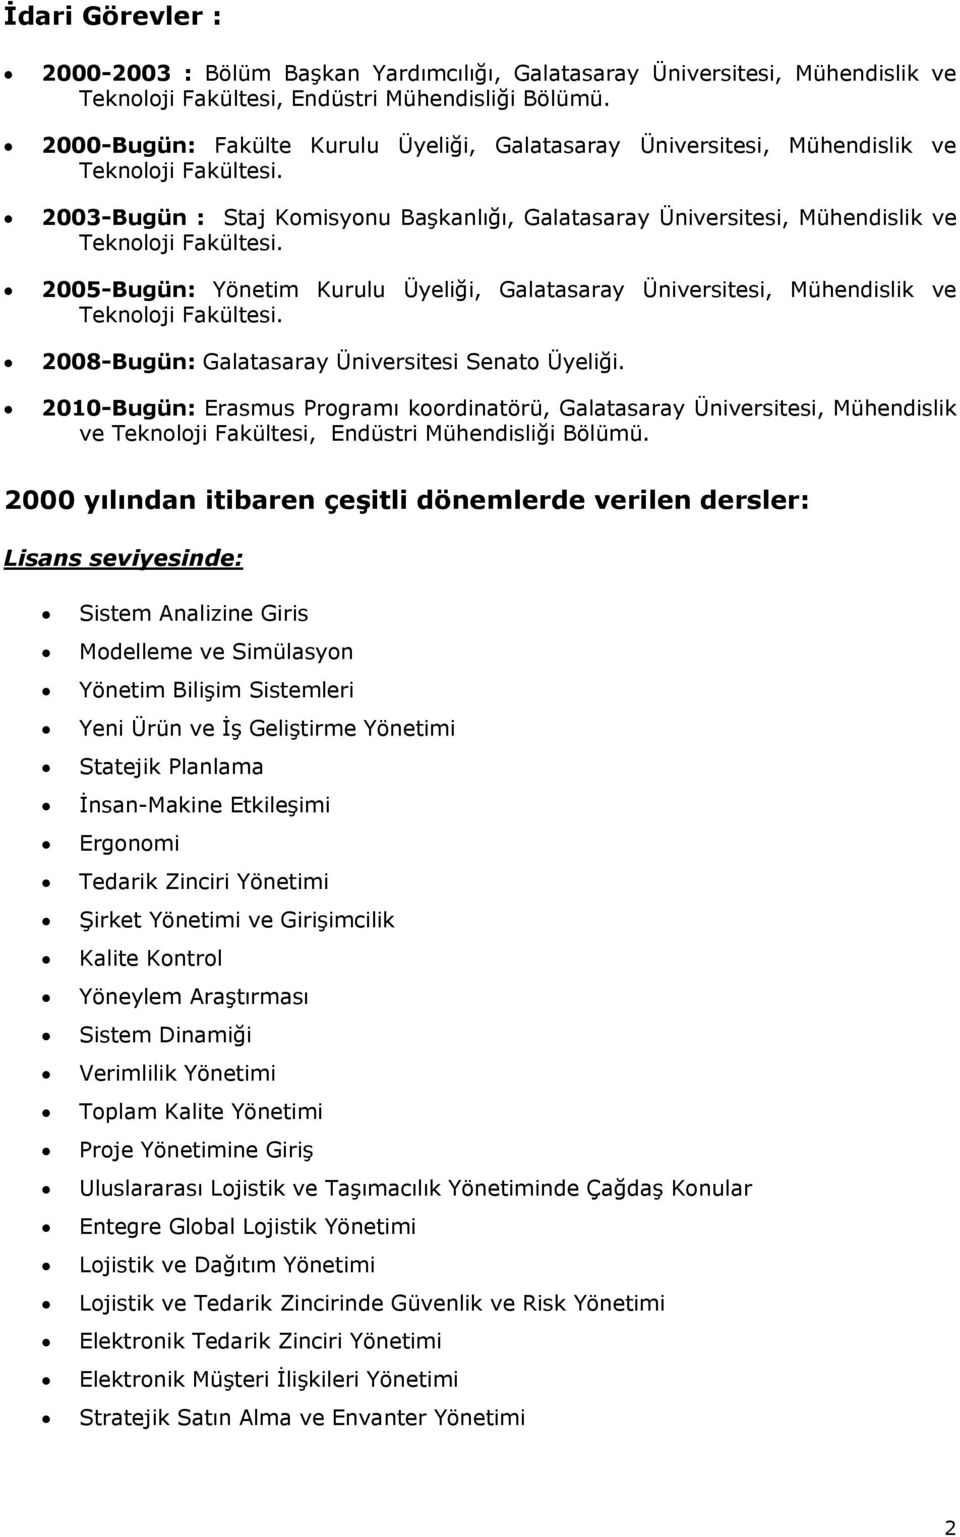 2005-Bugün: Yönetim Kurulu Üyeliği, Galatasaray Üniversitesi, Mühendislik ve Teknoloji Fakültesi. 2008-Bugün: Galatasaray Üniversitesi Senato Üyeliği.